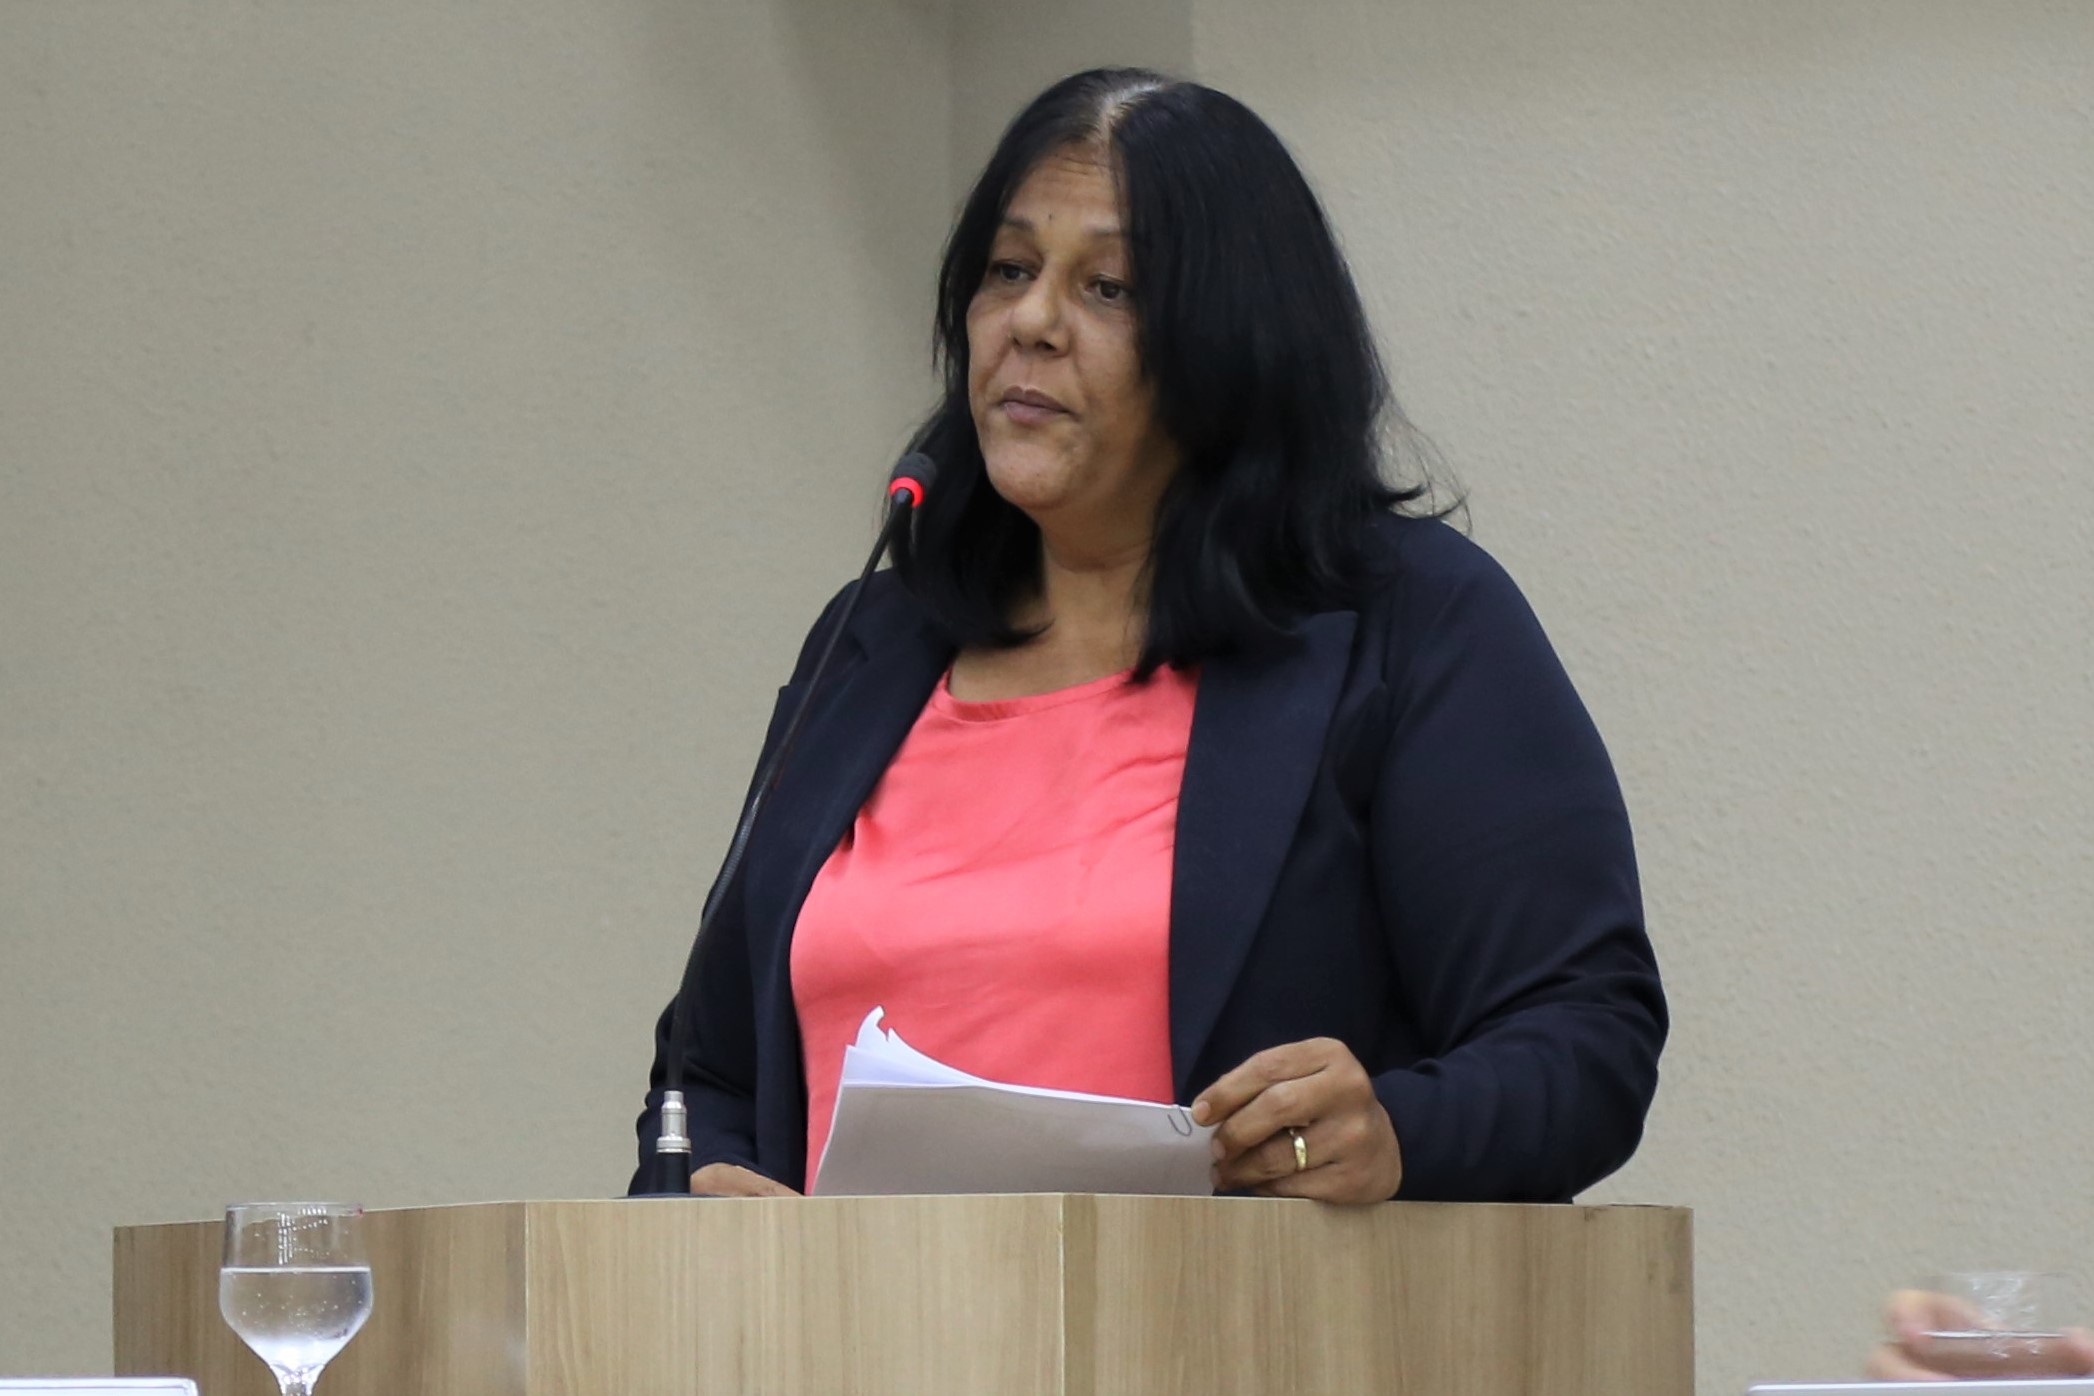 Maria José propõe a criação do Guia de Saúde na rede pública municipal